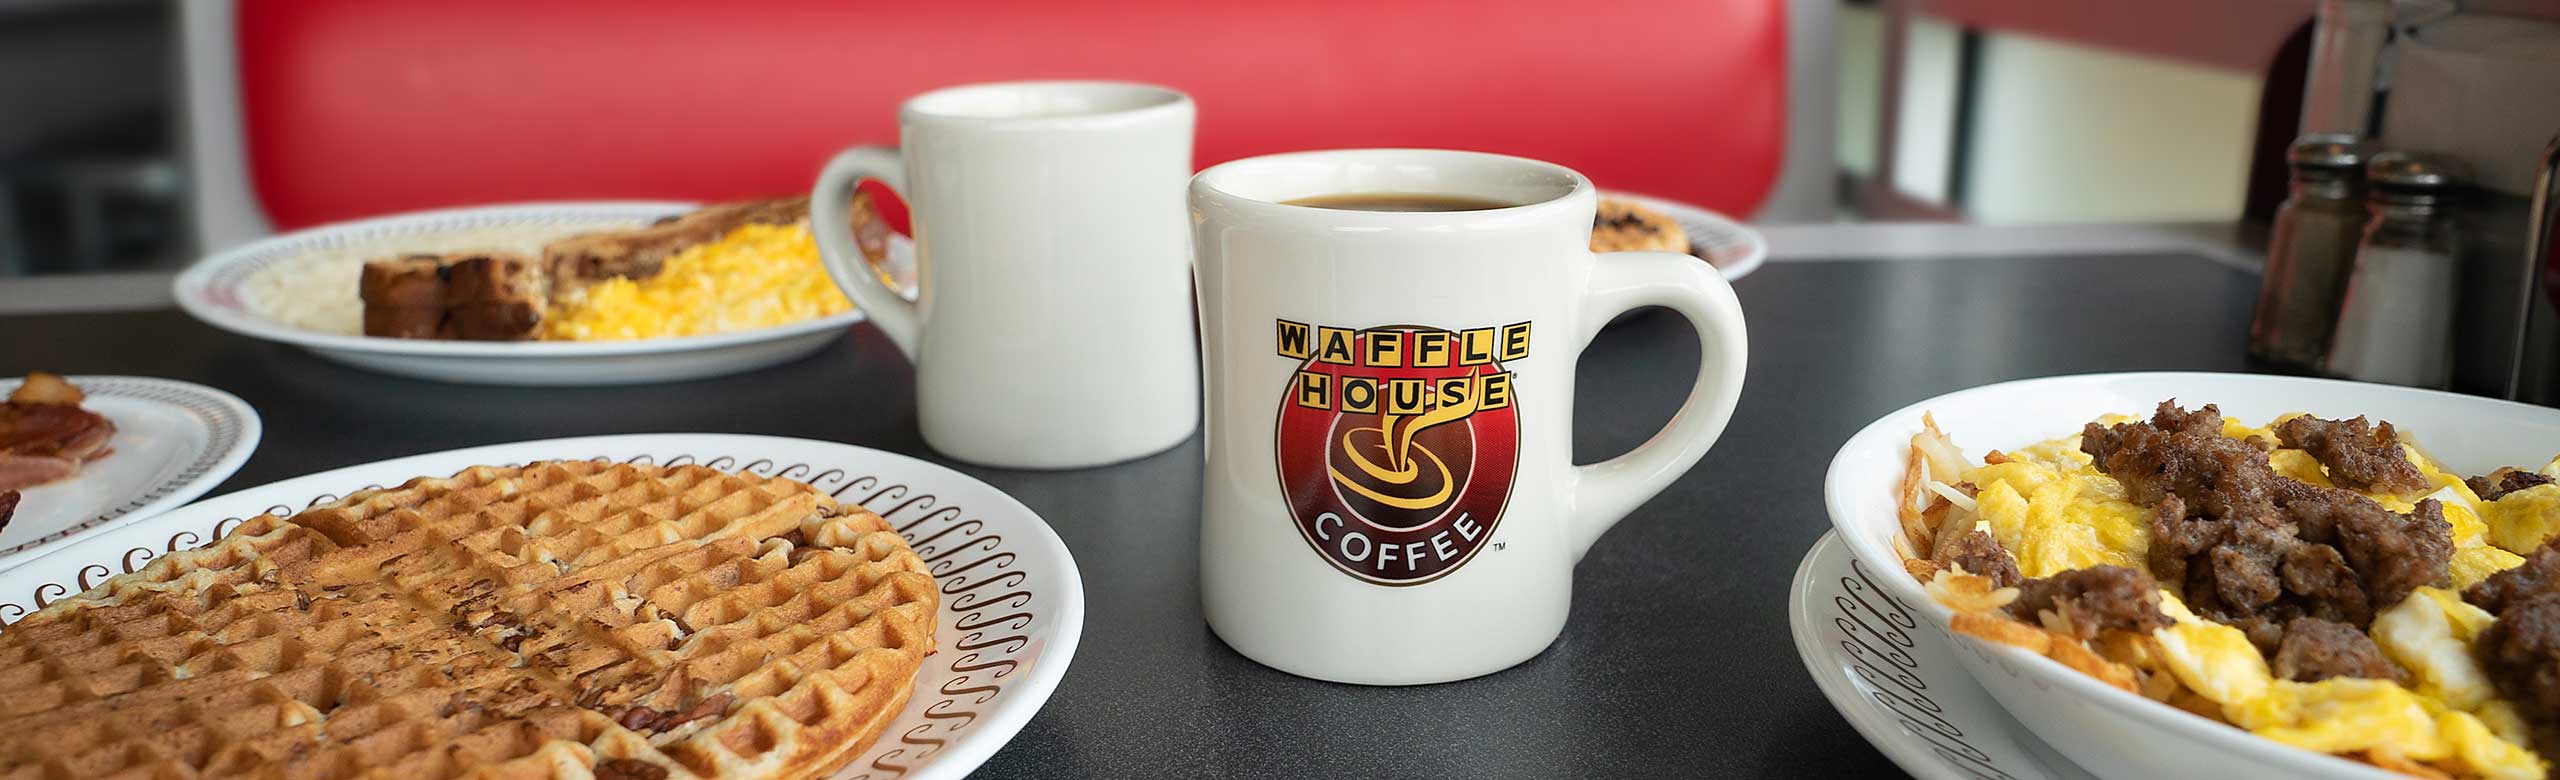 Waffle House Coffee